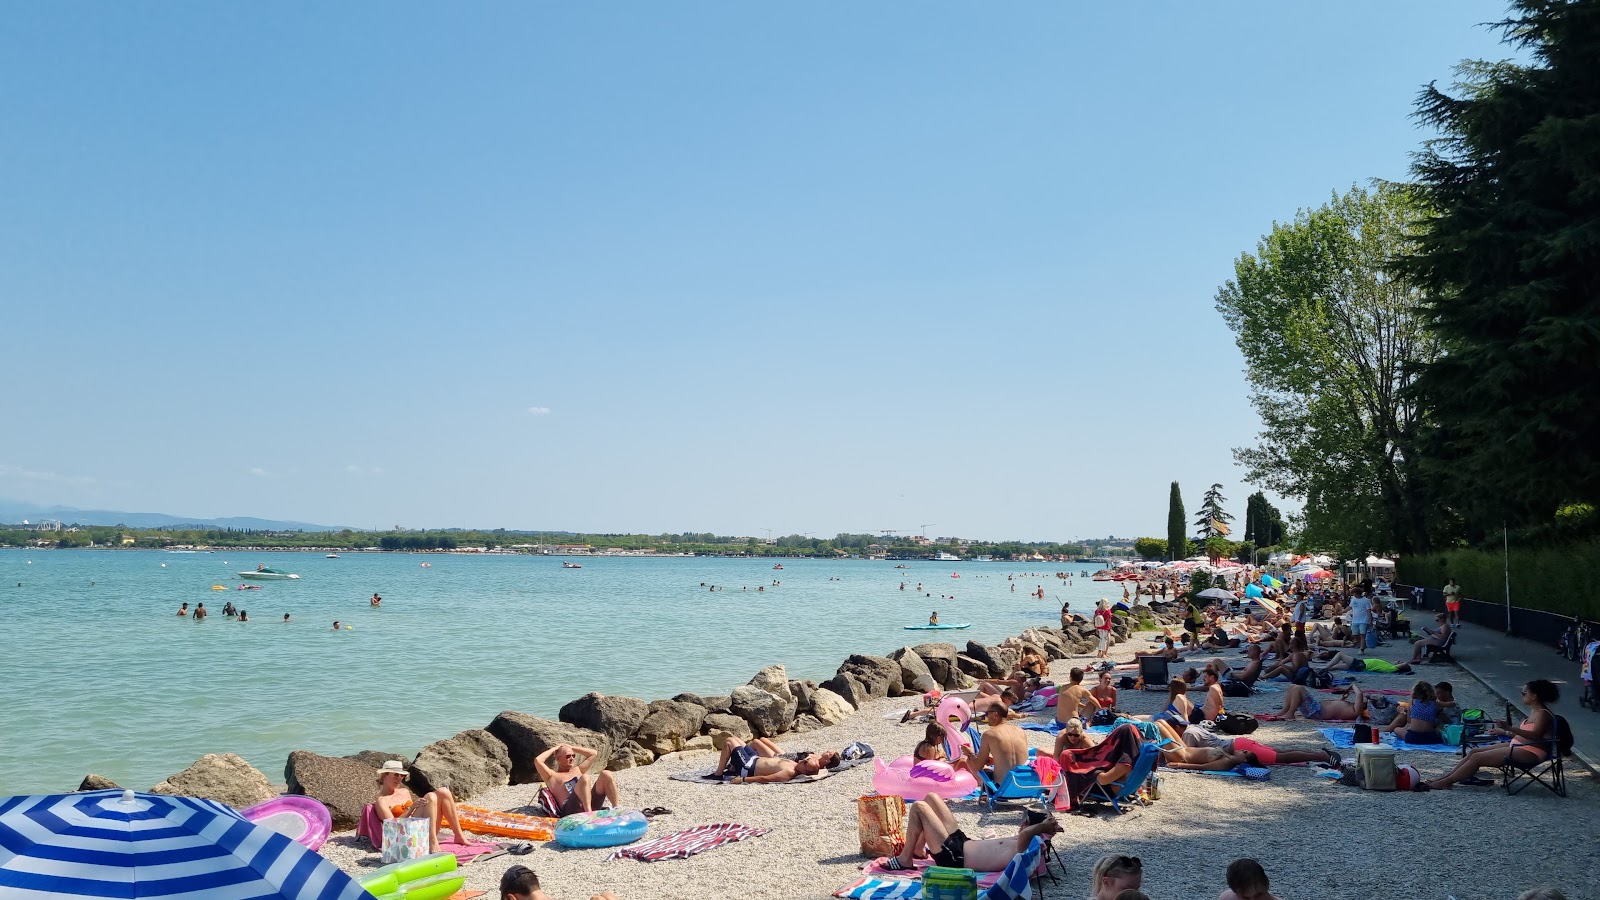 Foto de Spiaggia Dei Capuccini - lugar popular entre los conocedores del relax